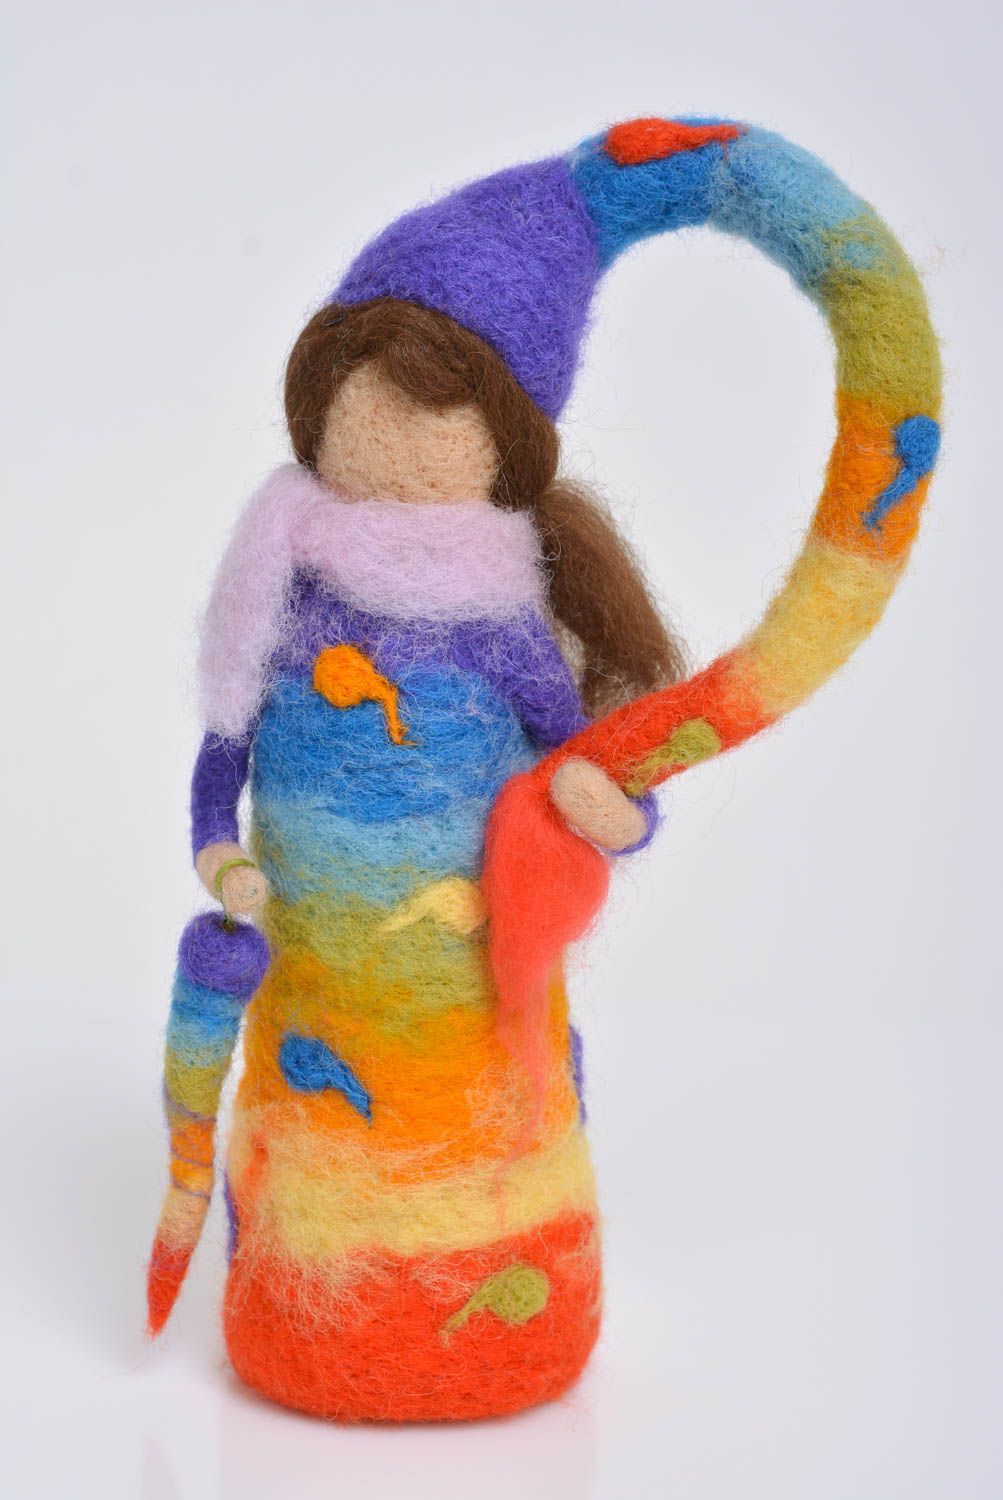 Яркая кукла в технике валяния игрушка для ребенка или статуэтка небольшая хенд мейд фото 1